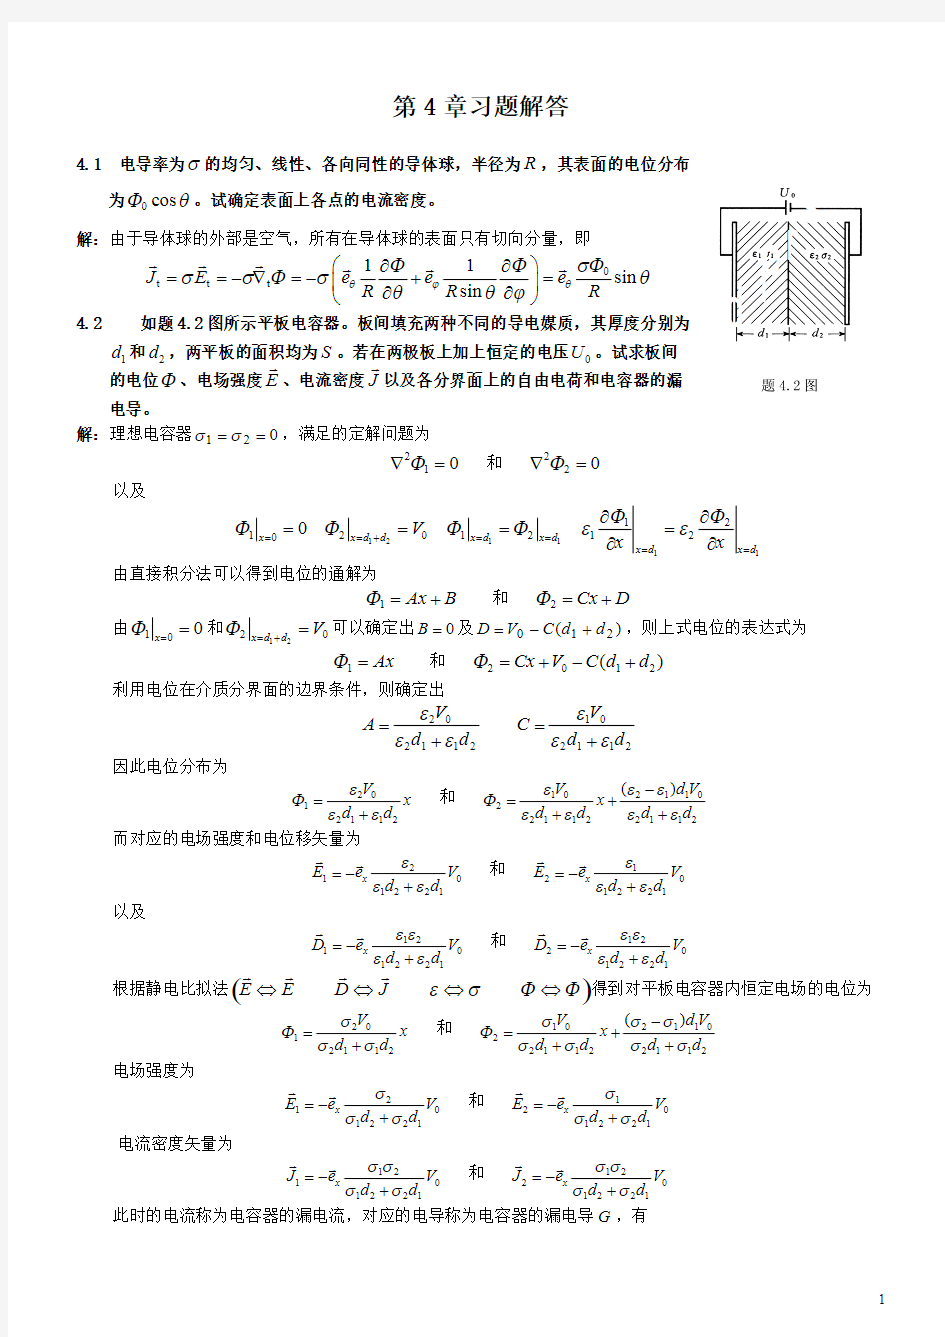 电磁场与电磁波理论(第二版)(徐立勤,曹伟)第4章习题解答